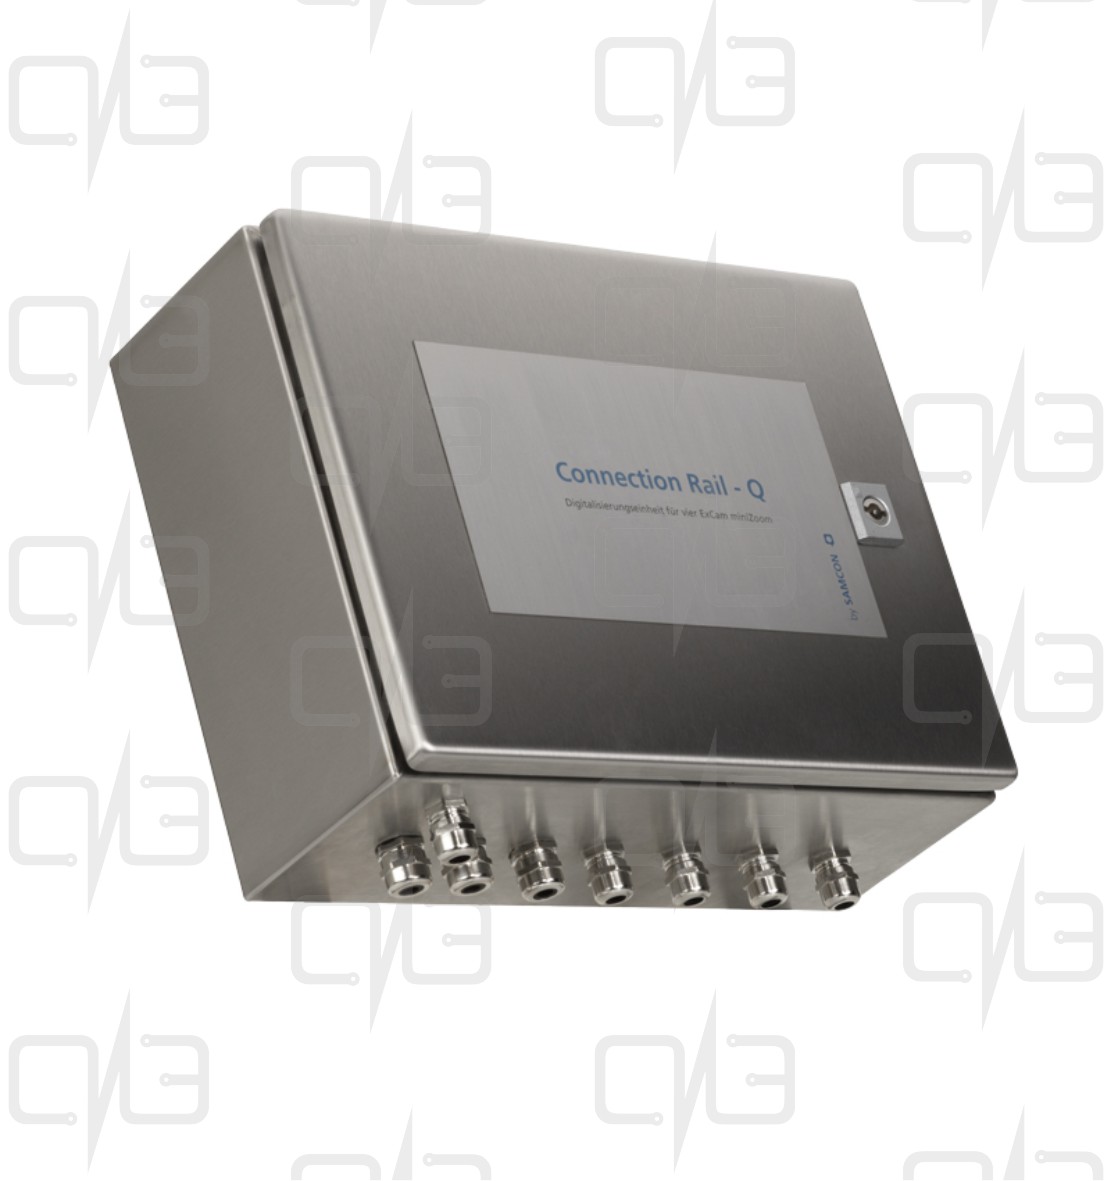 T05-Q2-AM-001 Connection Rail - Q2 Видеосервер с источником питания и точкой доступа Ethernet